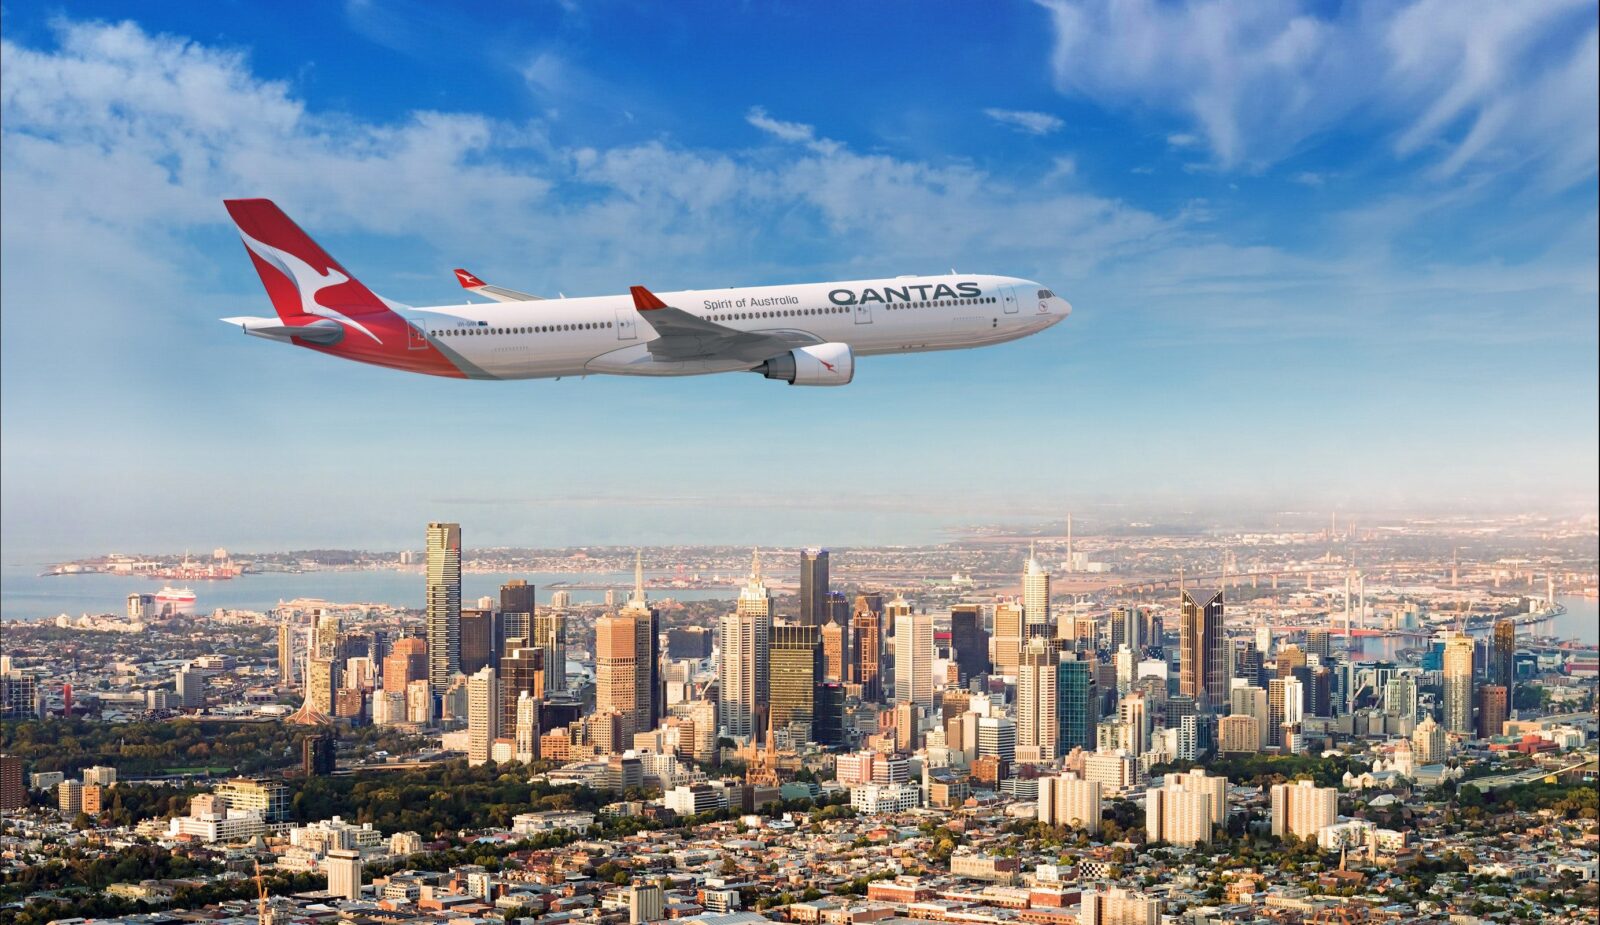 Qantas aircraft over Melbourne